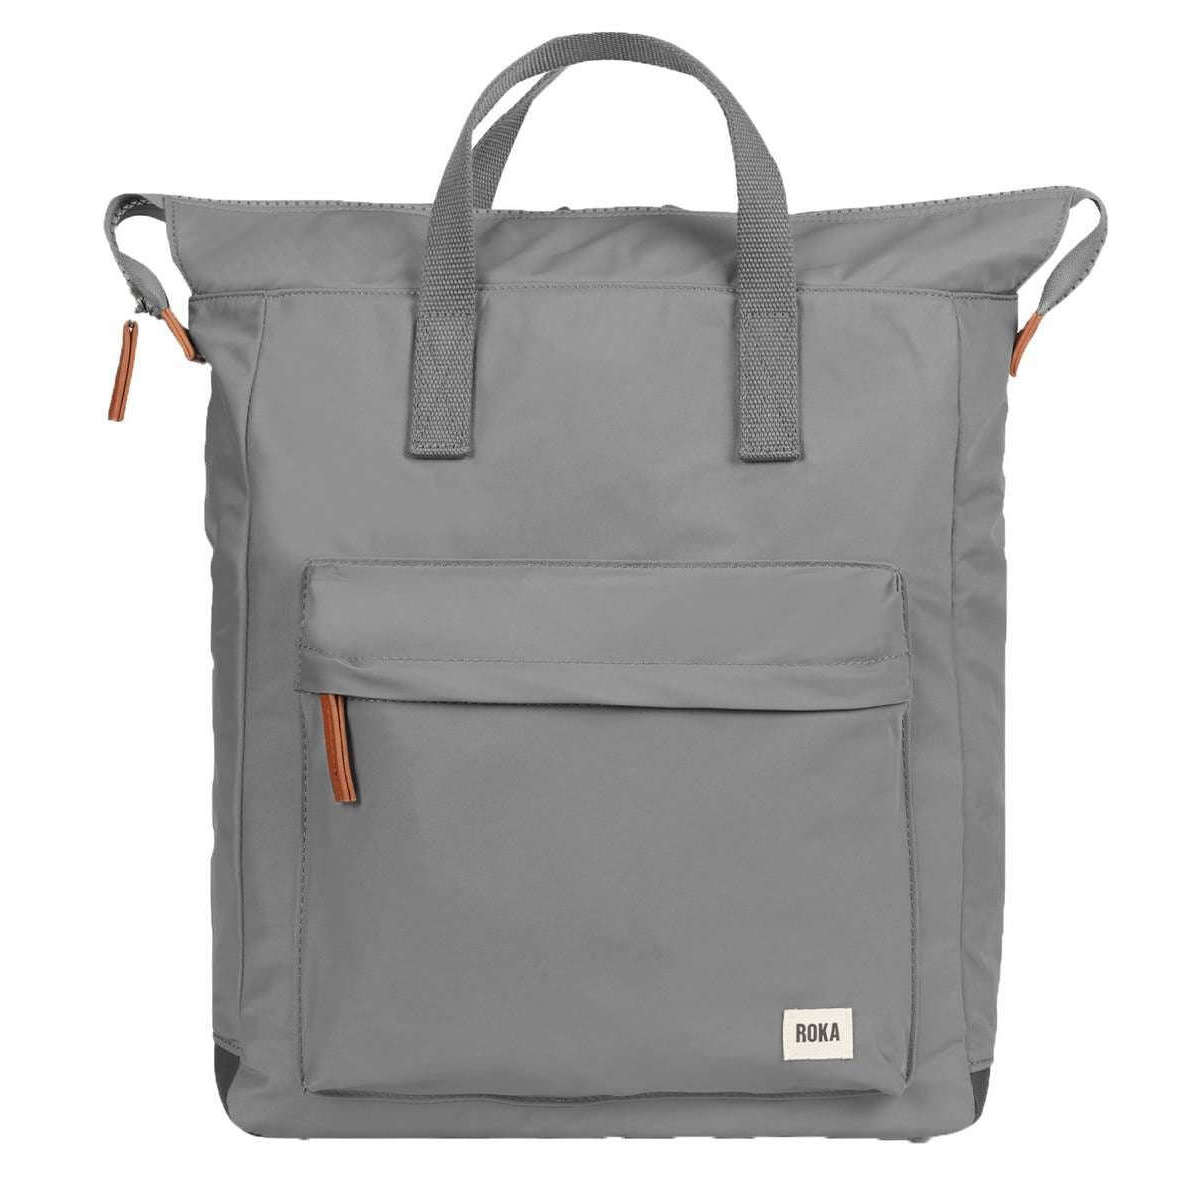 Roka Bantry B Large Sustainable Nylon Backpack - Stormy Grey